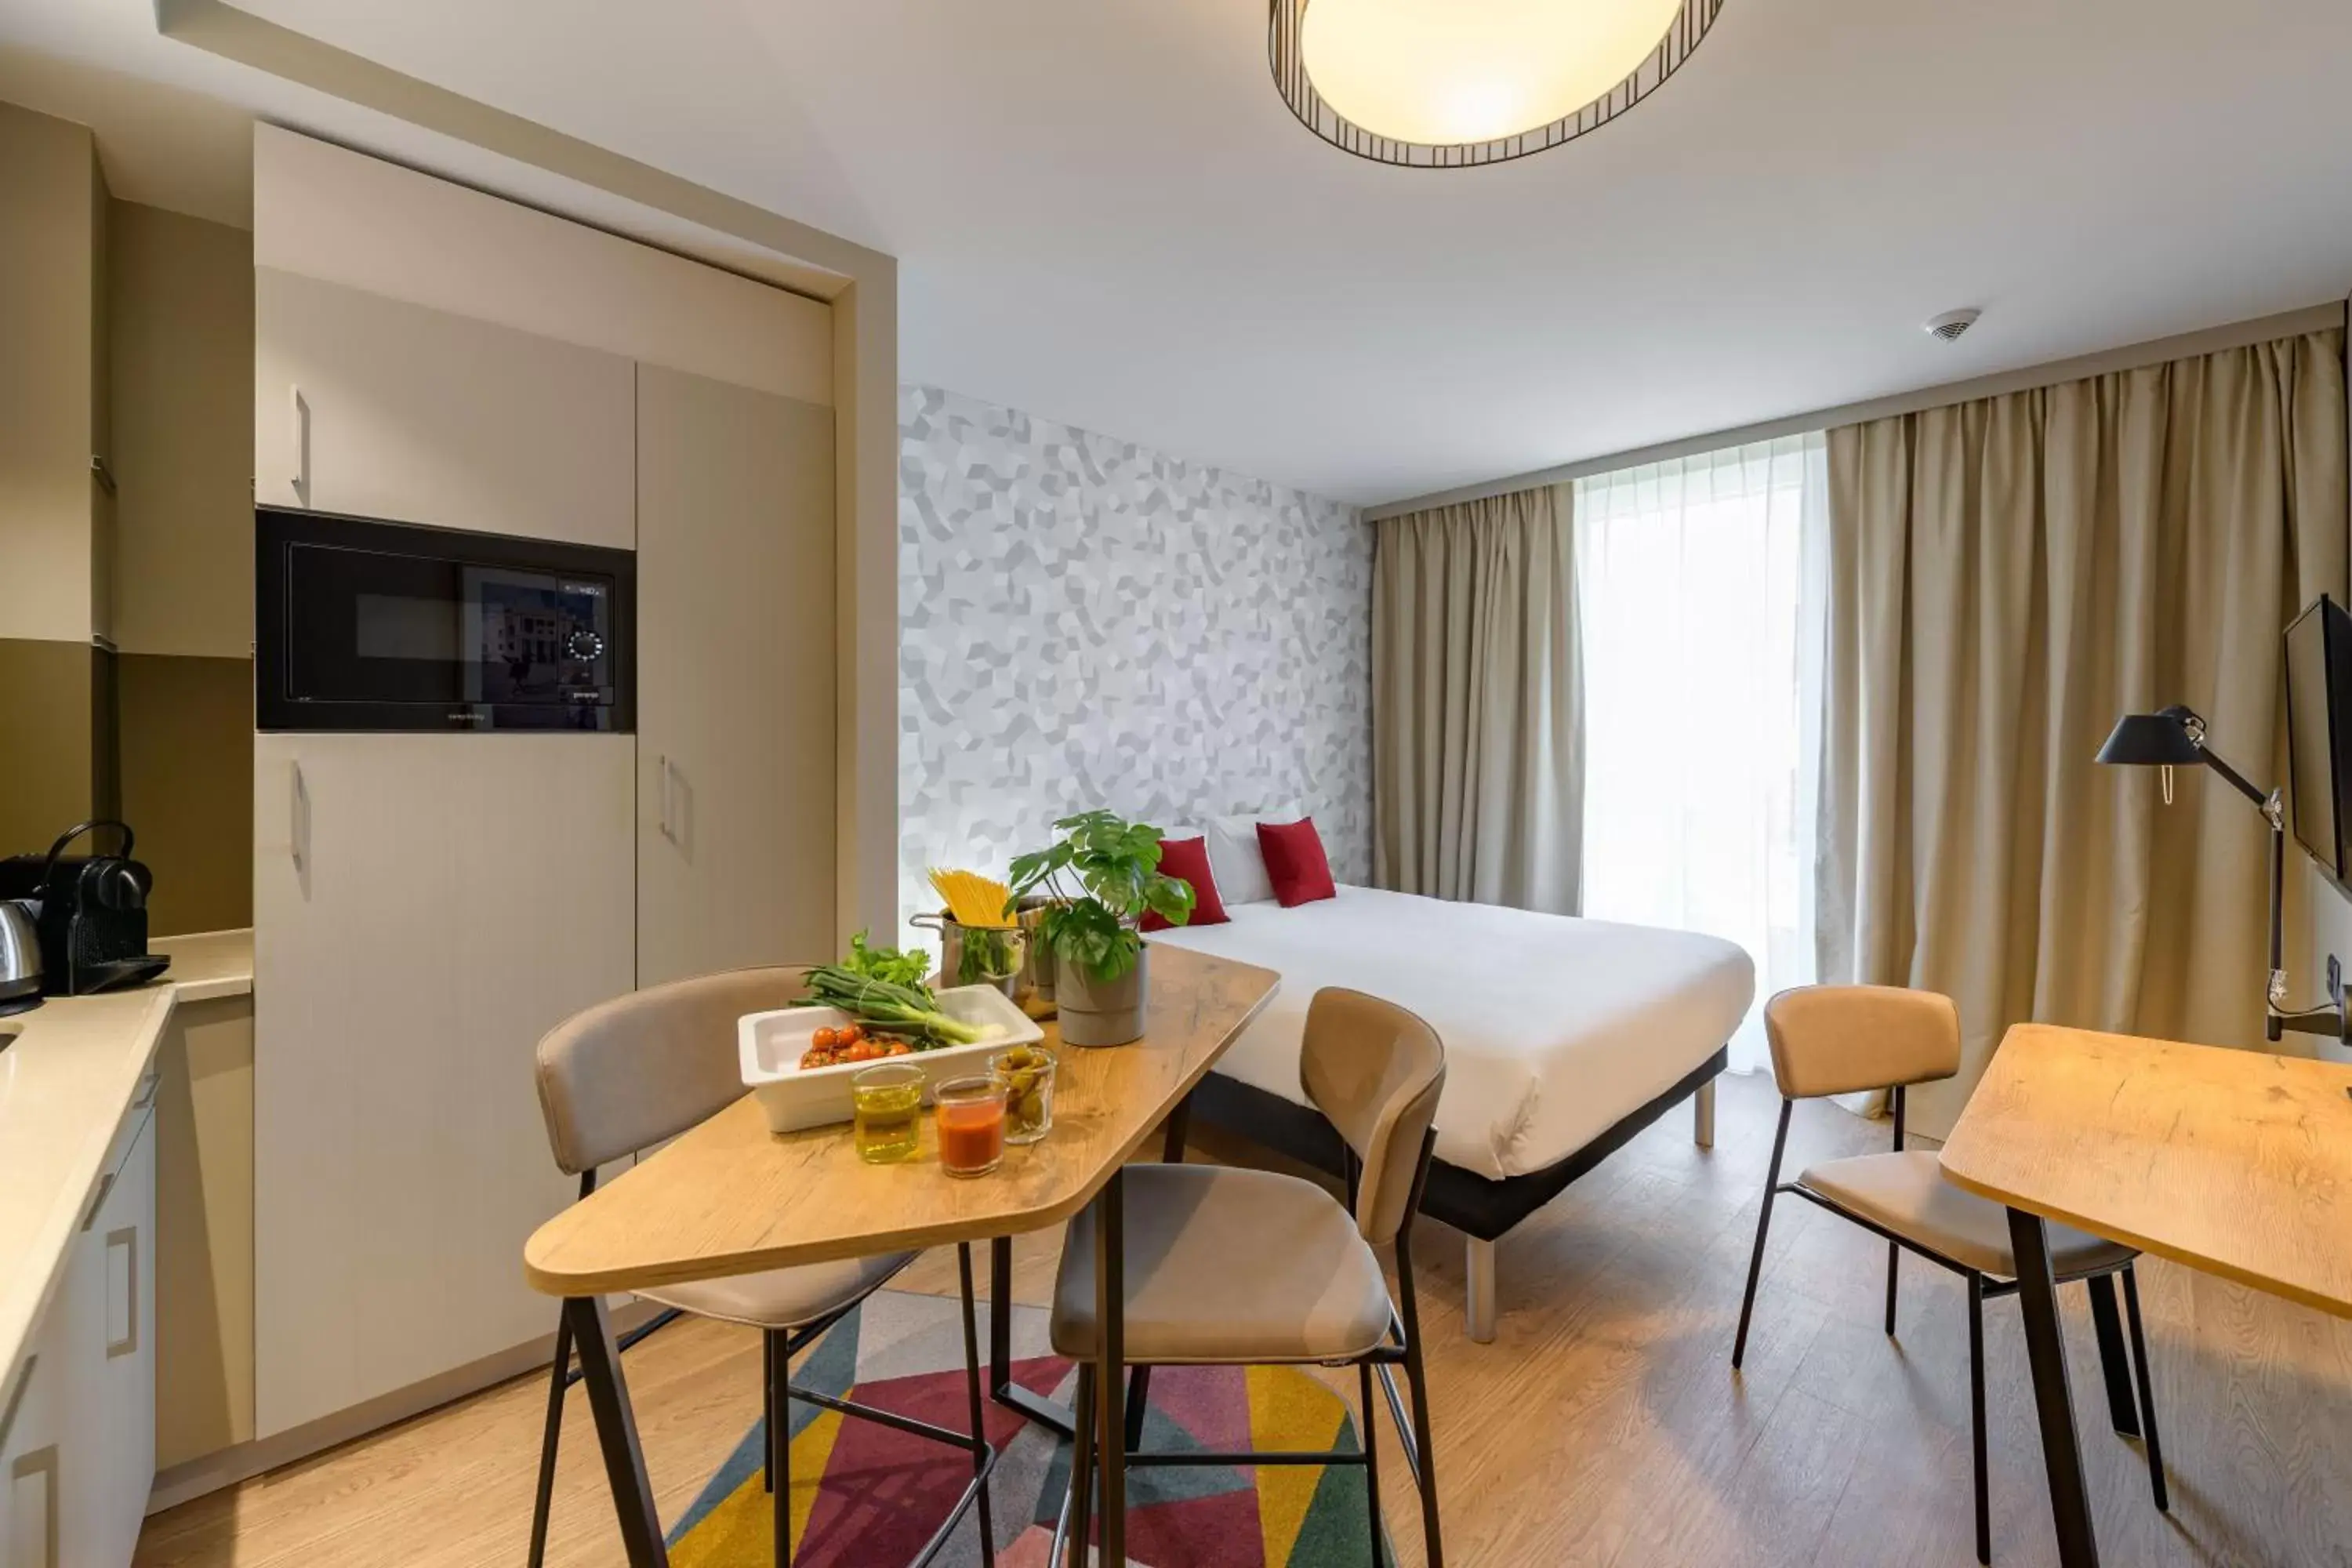 Bedroom, Dining Area in Aparthotel Adagio Zurich City Center